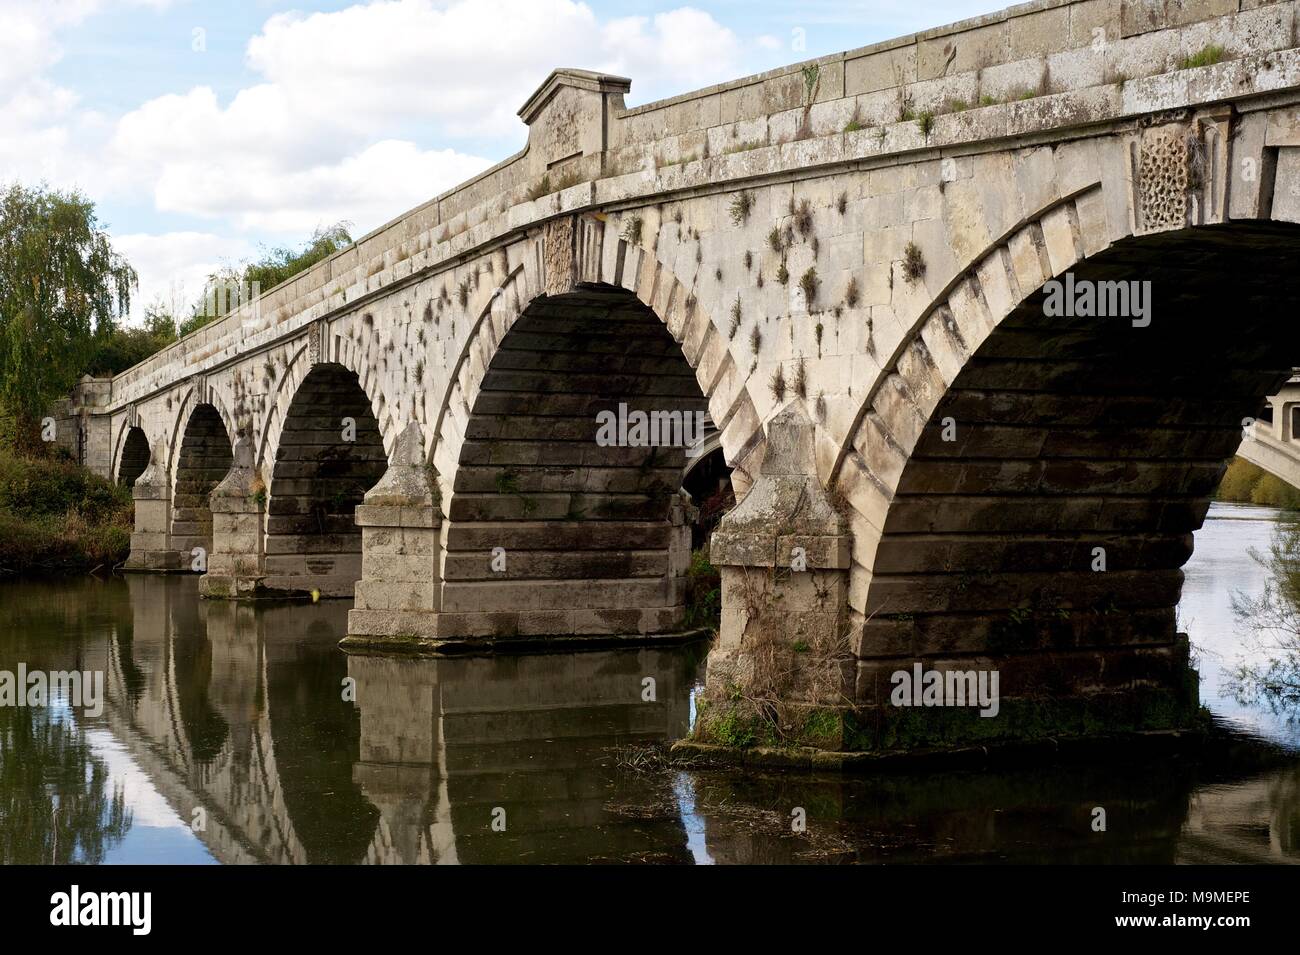 Il ponte di pietra a Atcham Shrewsbury, Inghilterra oltre il fiume Severn che mostra l'acqua che scorre sotto decorativi archi scolpiti in autunno Foto Stock